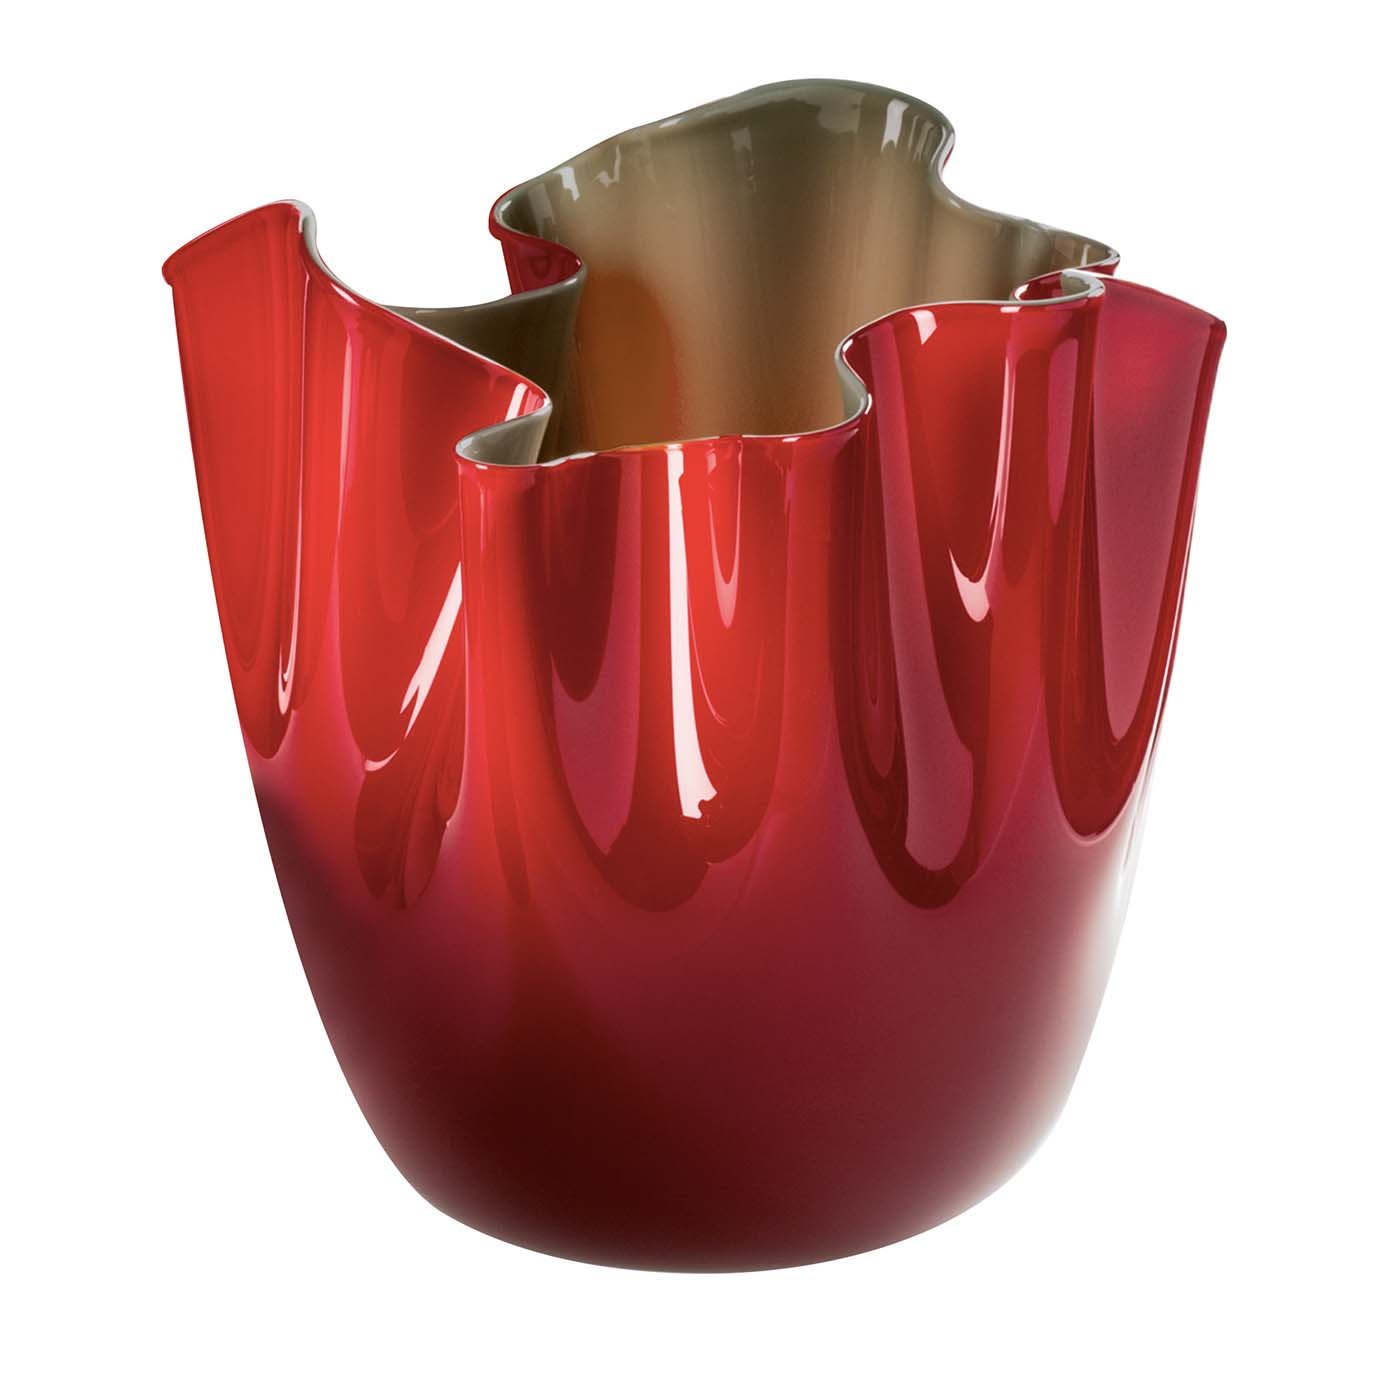 Fazzoletto Opalini Red Vase by Fulvio Bianconi # 1 - Venini